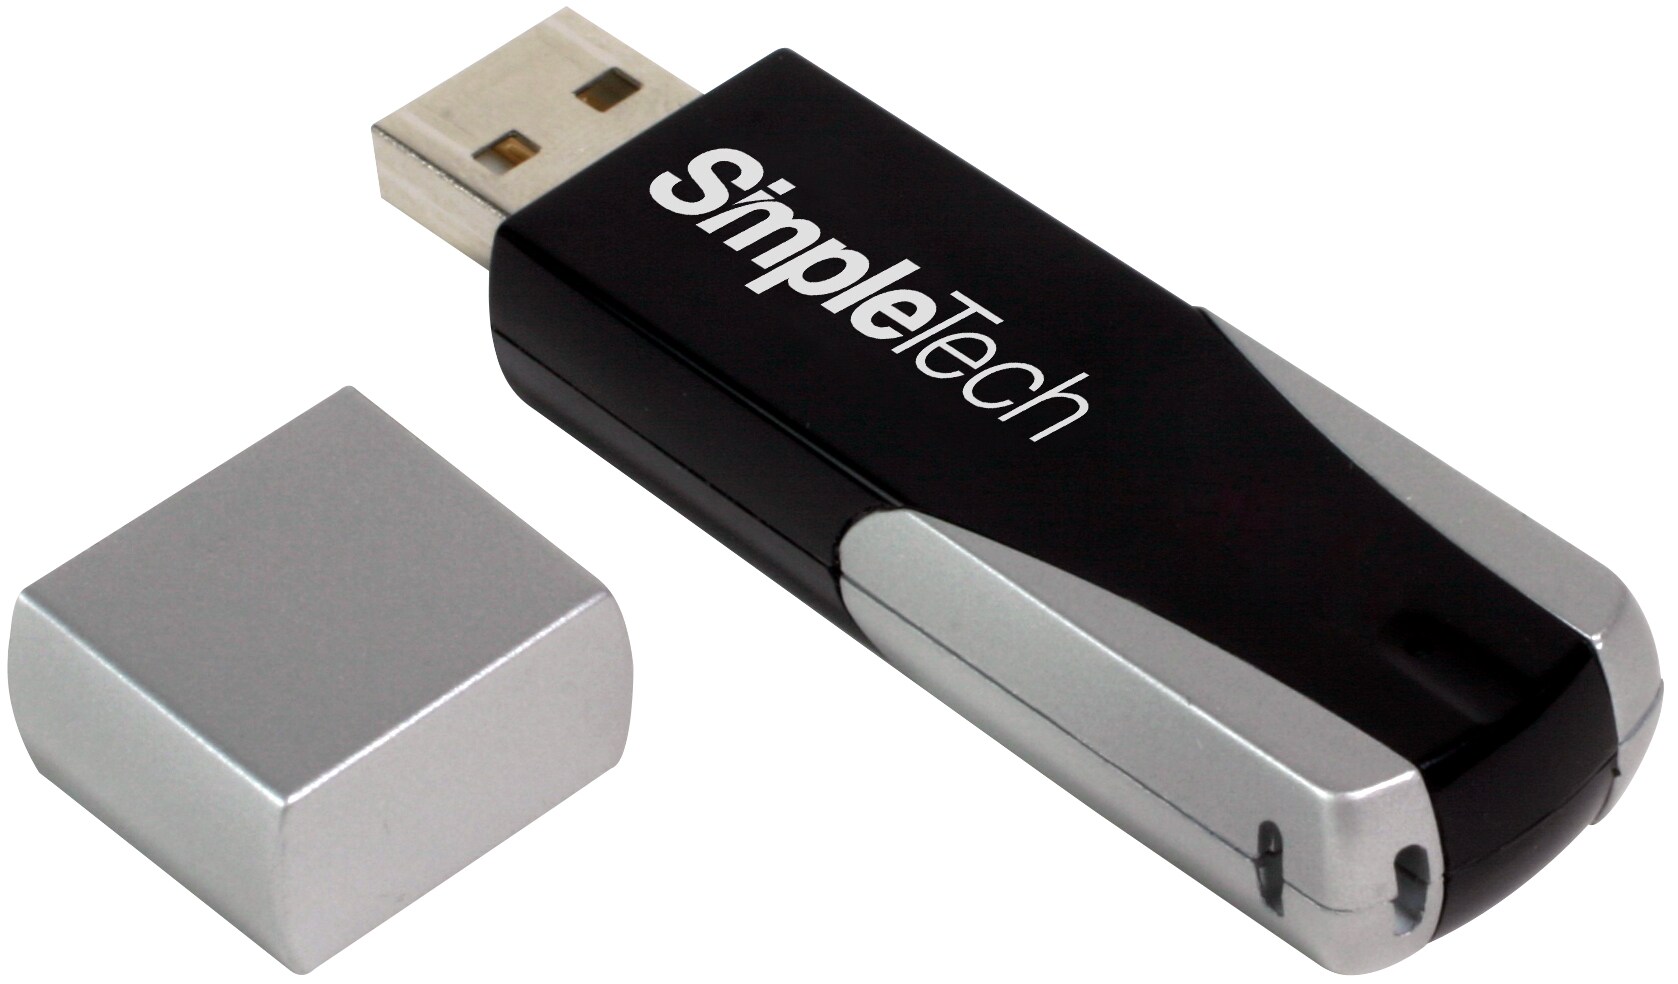 SimpleTech 256MB Full Speed USB 2.0 Flash Drive